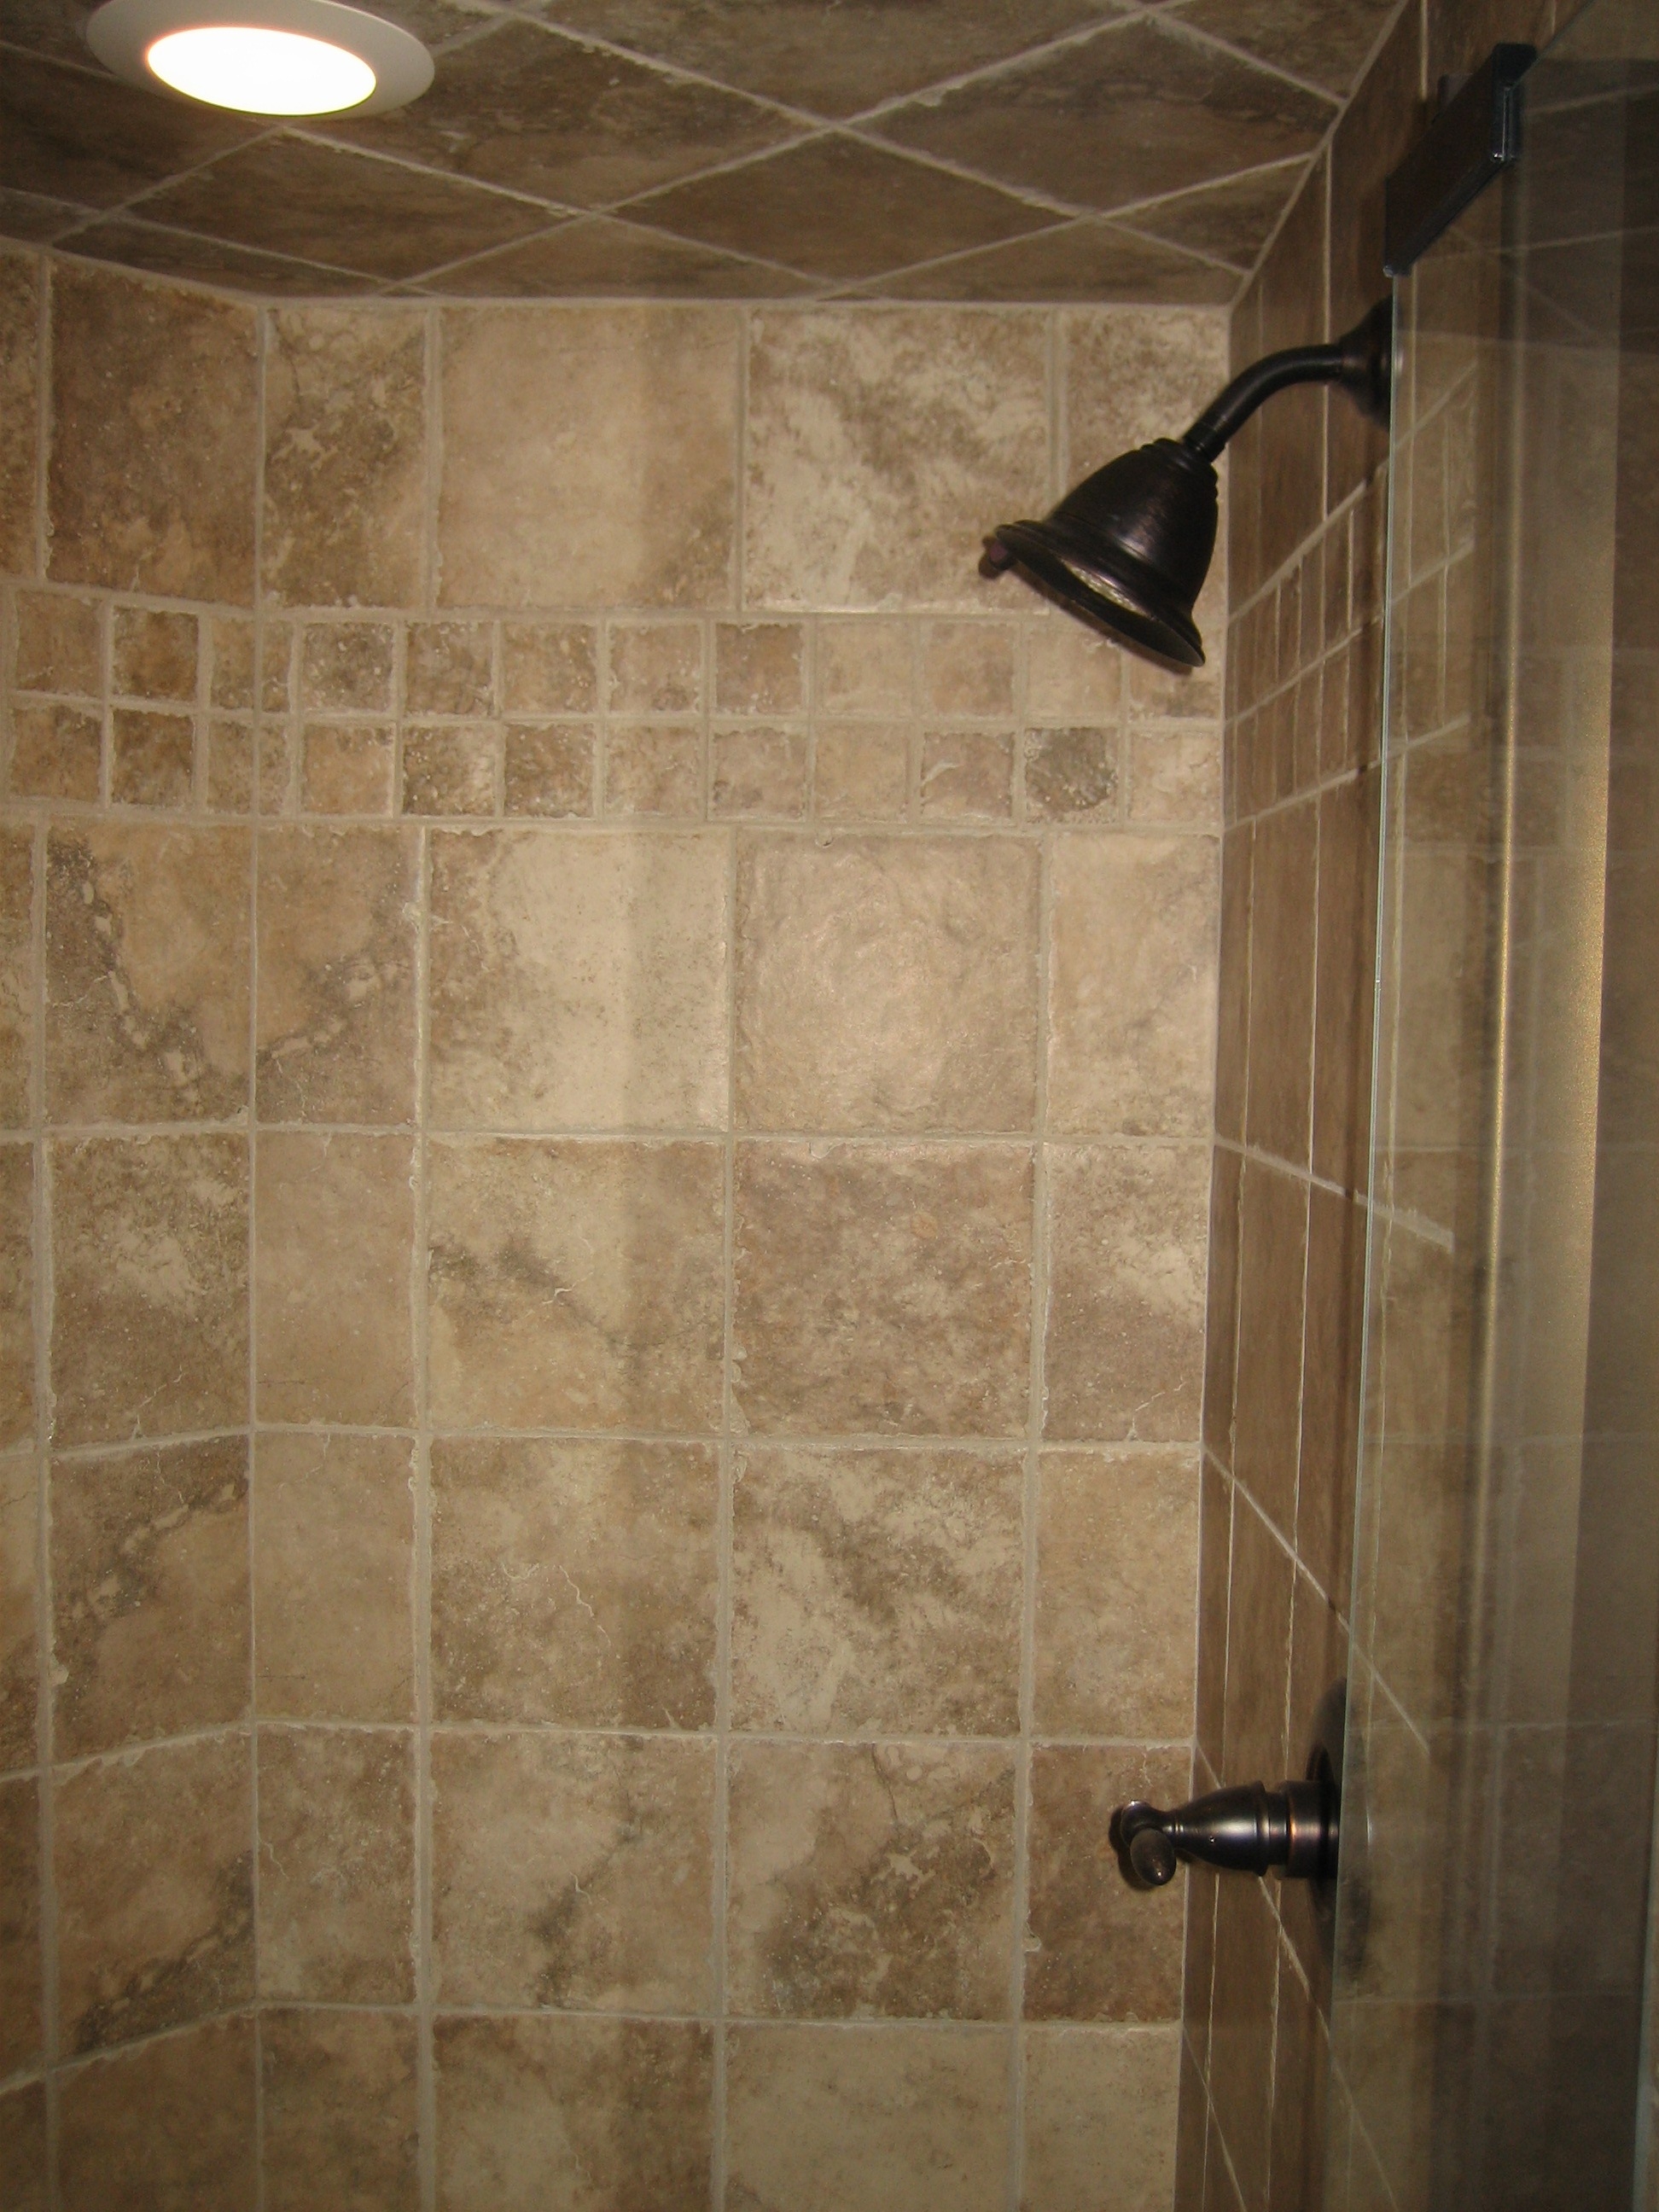 Shower Room Ceiling Tiles